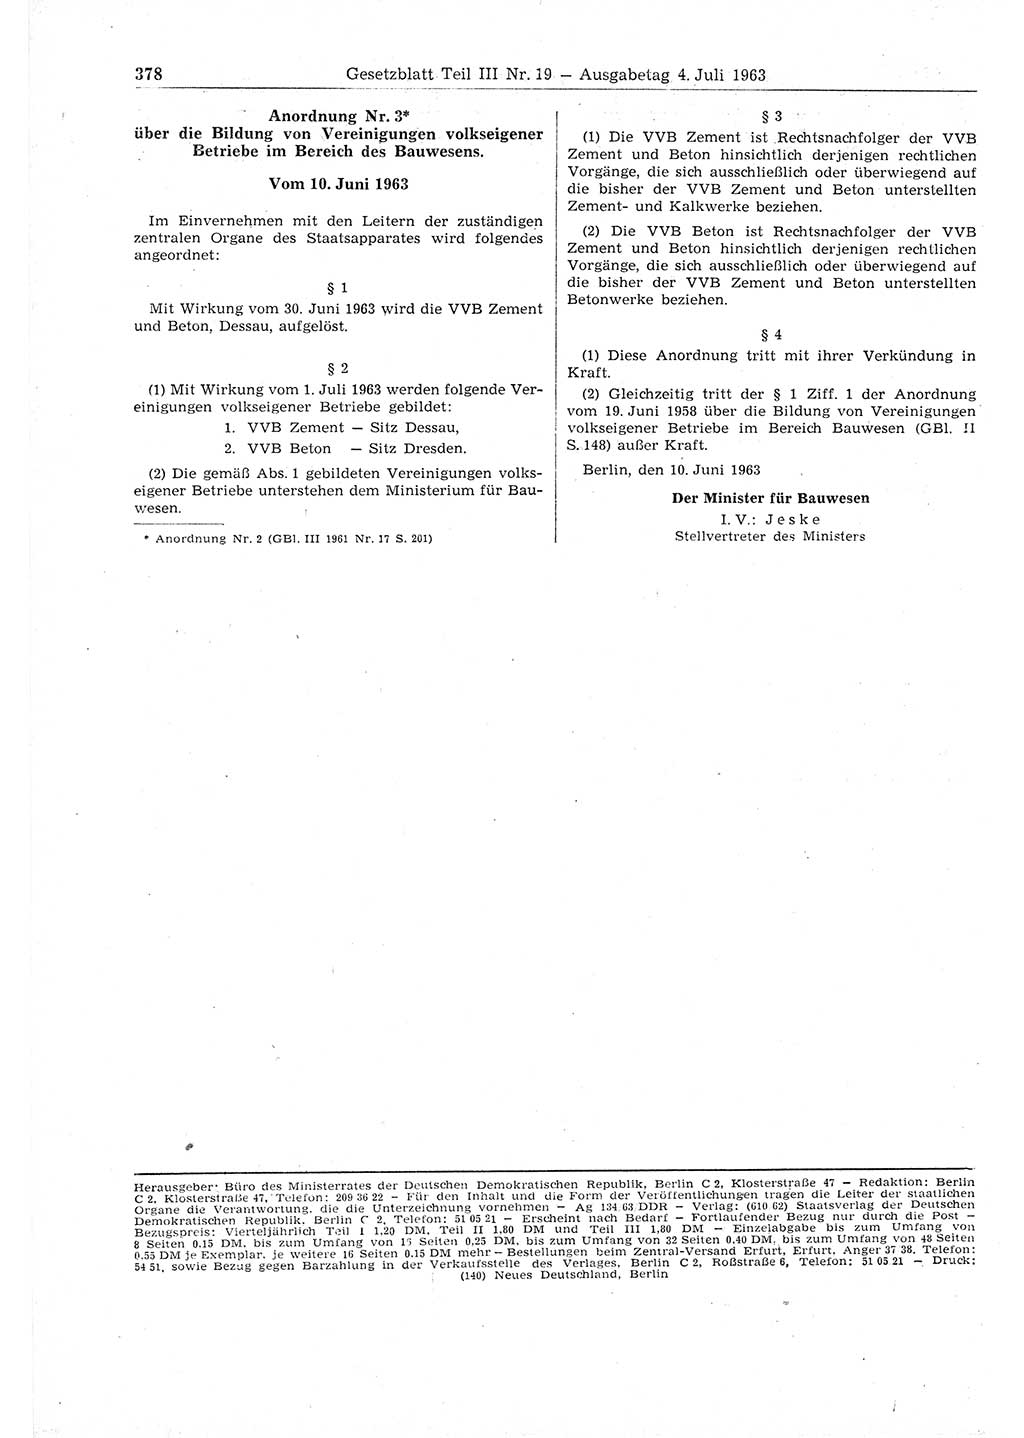 Gesetzblatt (GBl.) der Deutschen Demokratischen Republik (DDR) Teil ⅠⅠⅠ 1963, Seite 378 (GBl. DDR ⅠⅠⅠ 1963, S. 378)